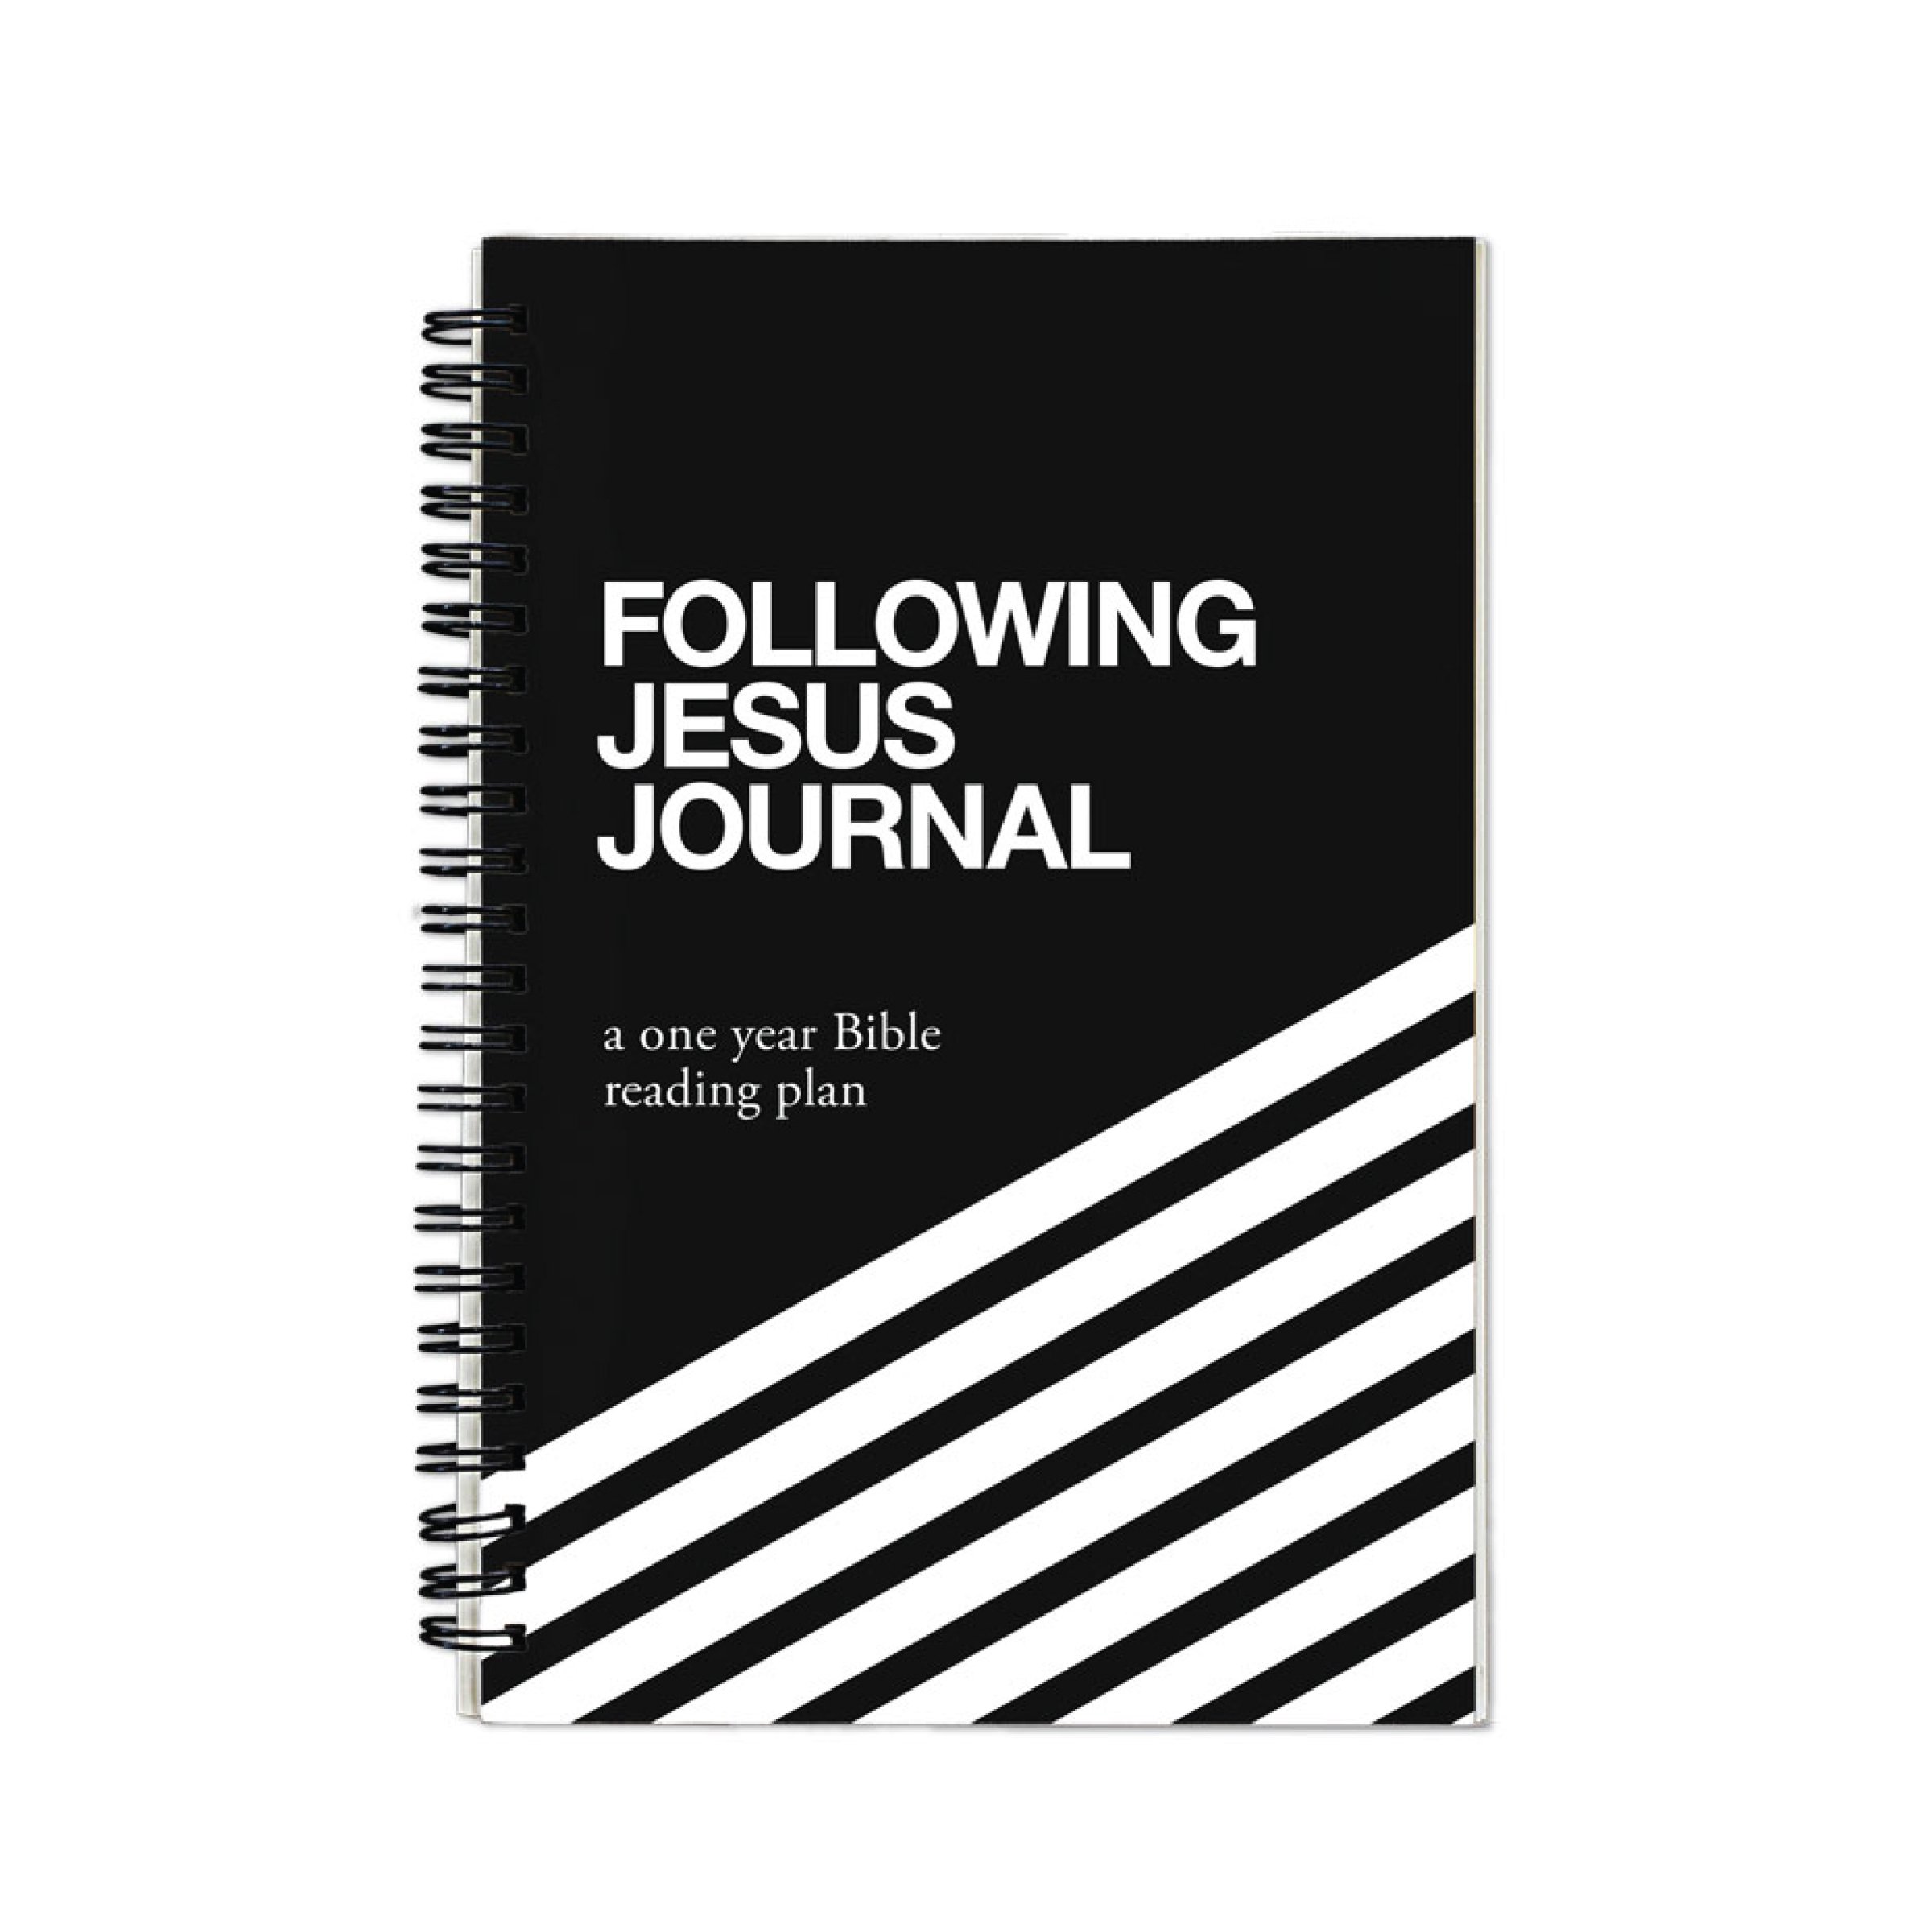 FJ_journal_product_image_cover_v1.jpg